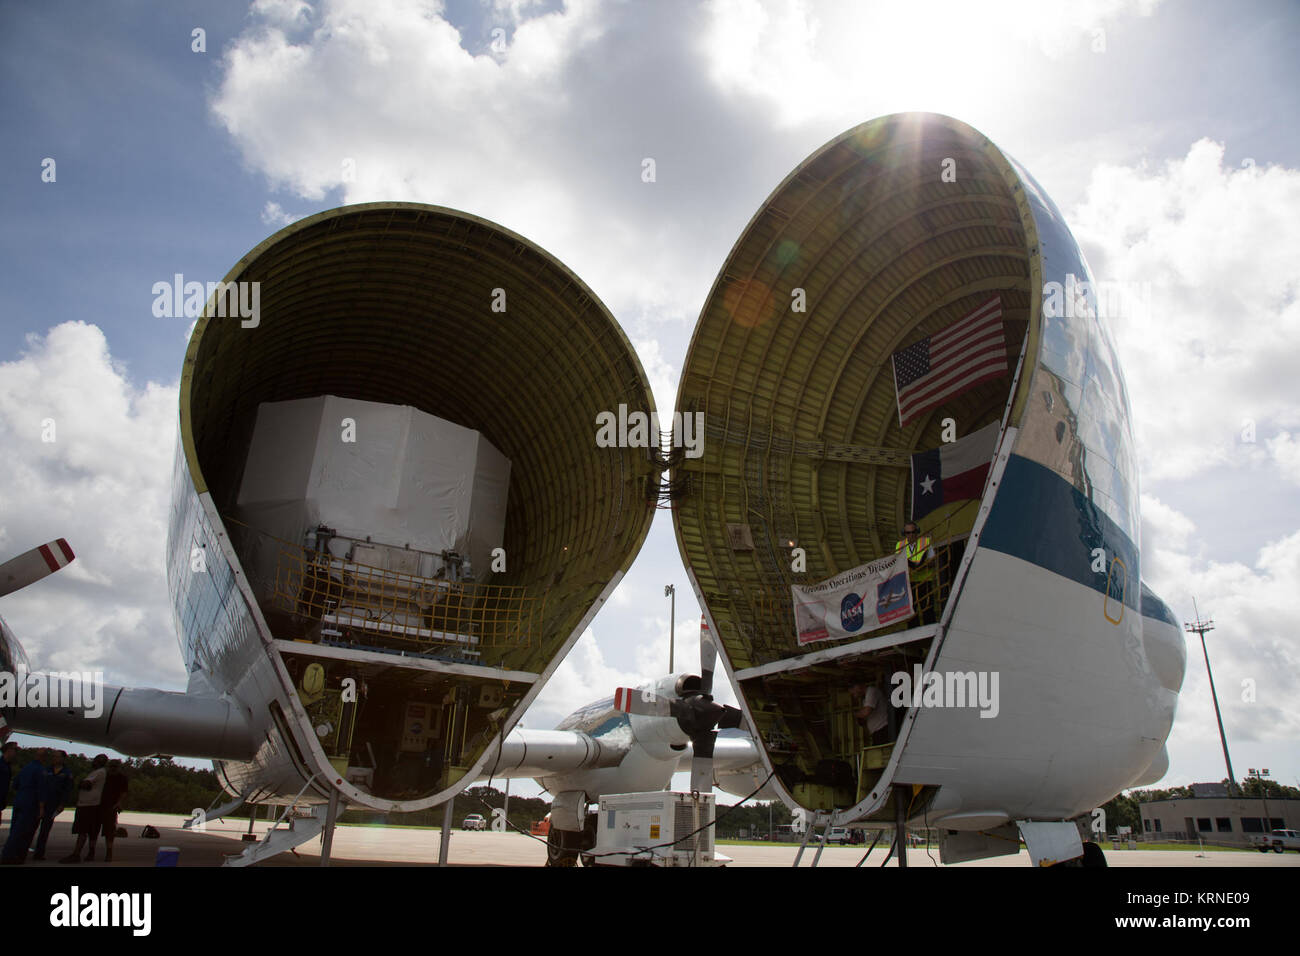 La Orion modulo di servizio per la prova strutturale articolo per la missione di esplorazione-1 (EM-1), costruito dall'Agenzia spaziale europea, è fissato all'interno di NASA Super Guppy aeromobile presso il Kennedy Space Center navetta dell impianto di sbarco, gestito da spazio in Florida. Il modulo sarà spedito a Lockheed Martin's Denver facility a subire la prova. Il veicolo spaziale Orion lancerà in cima all'agenzia spaziale del sistema di lancio razzo su EM-1 nel 2019. La NASA 941 Super Guppy terre a prelevare EM-1 Orion modulo di servizio per la prova strutturale articolo (KSC-20170623-PH-GEB01 0025) Foto Stock